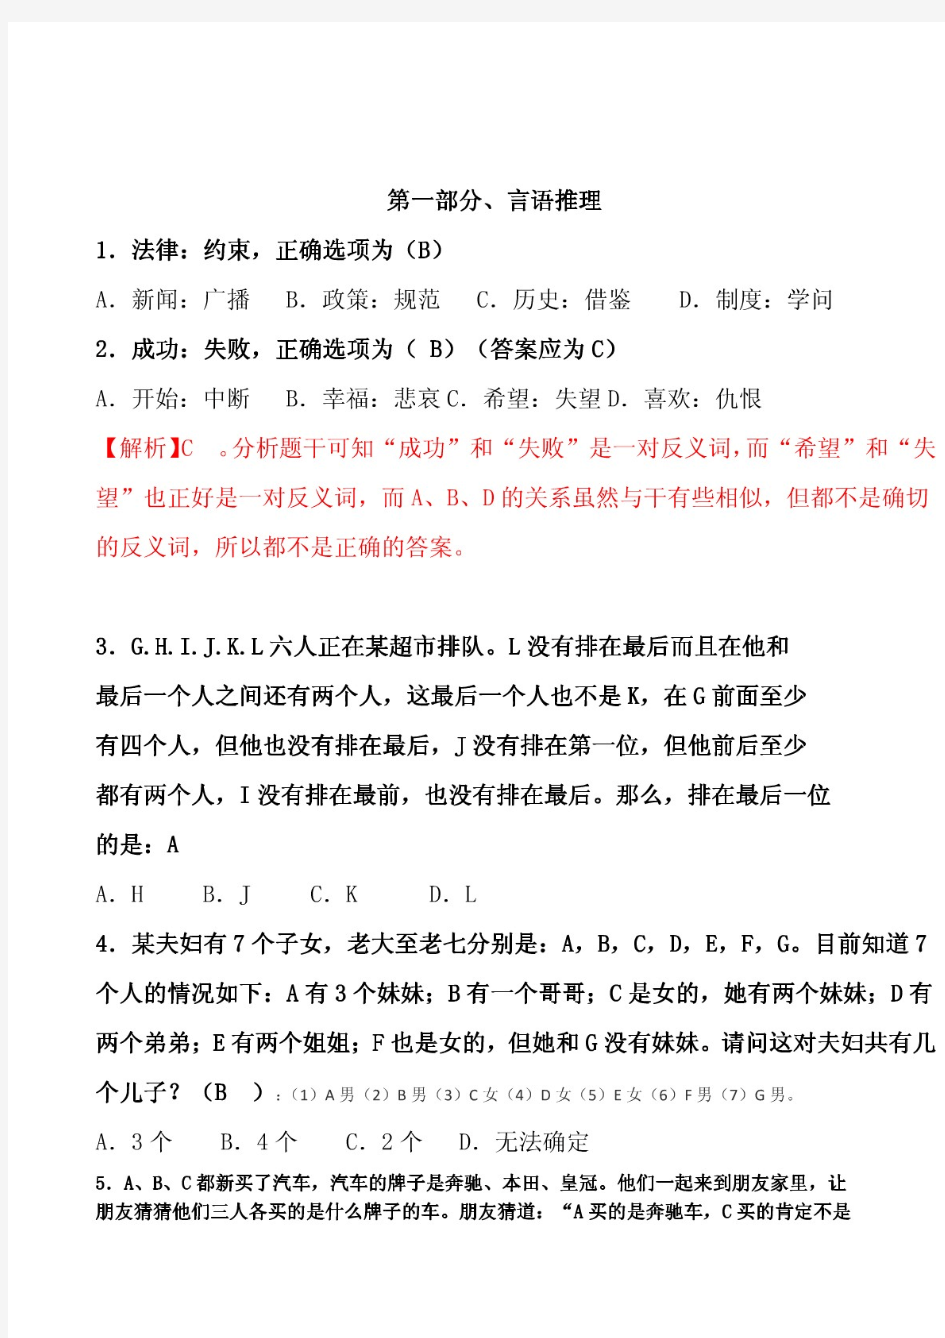 【精品】(2014.2.23答题01)深圳航空笔试第三套试题